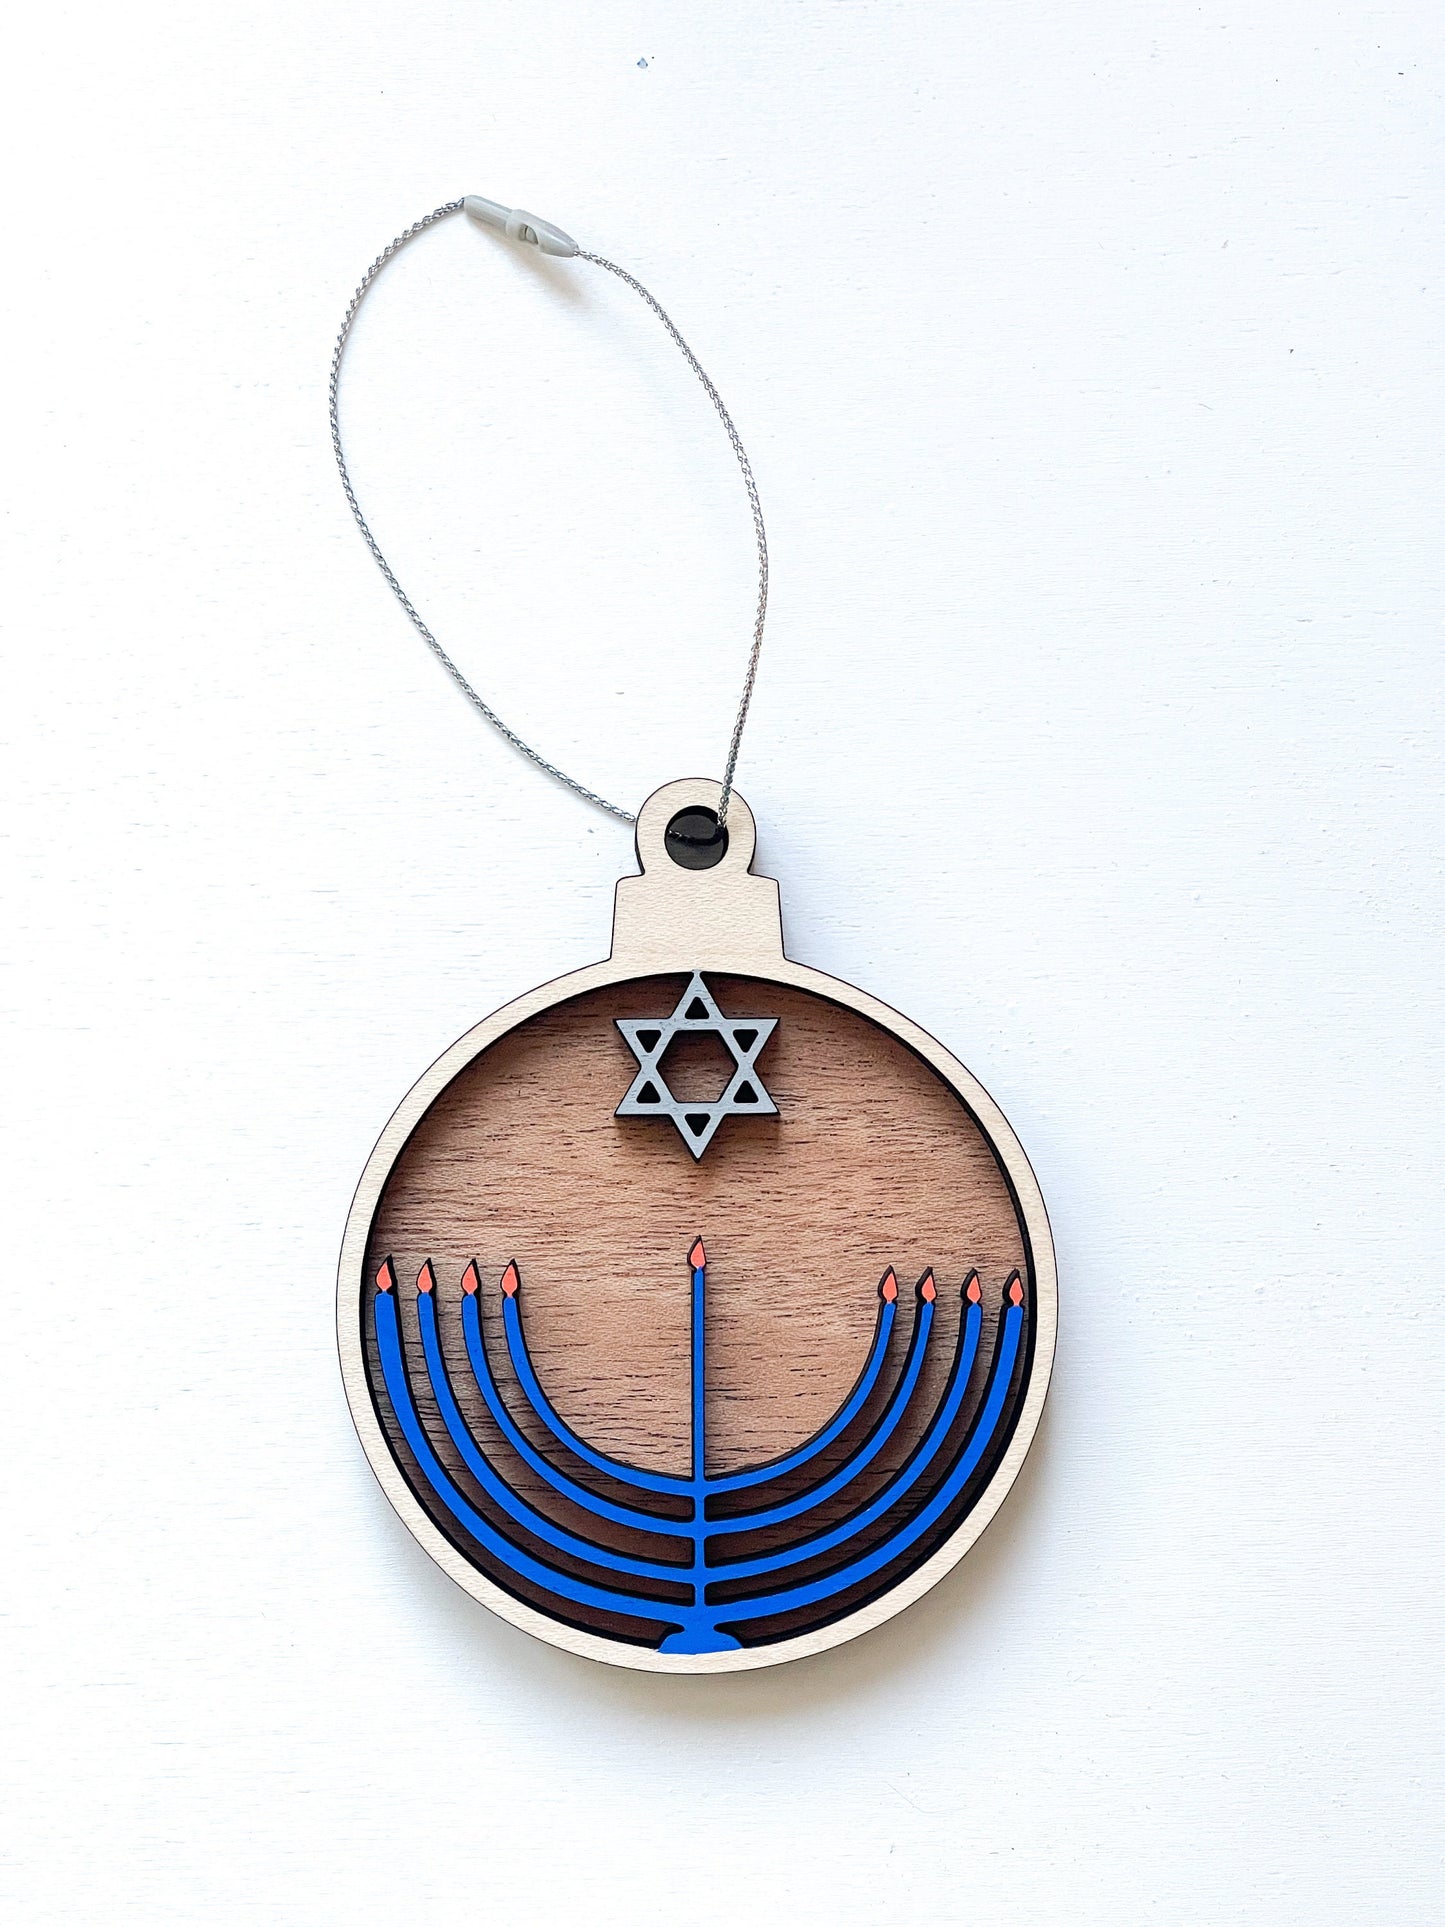 Hanukkah Menorah Ornament | Jewish Ornament | Chanukah Gift